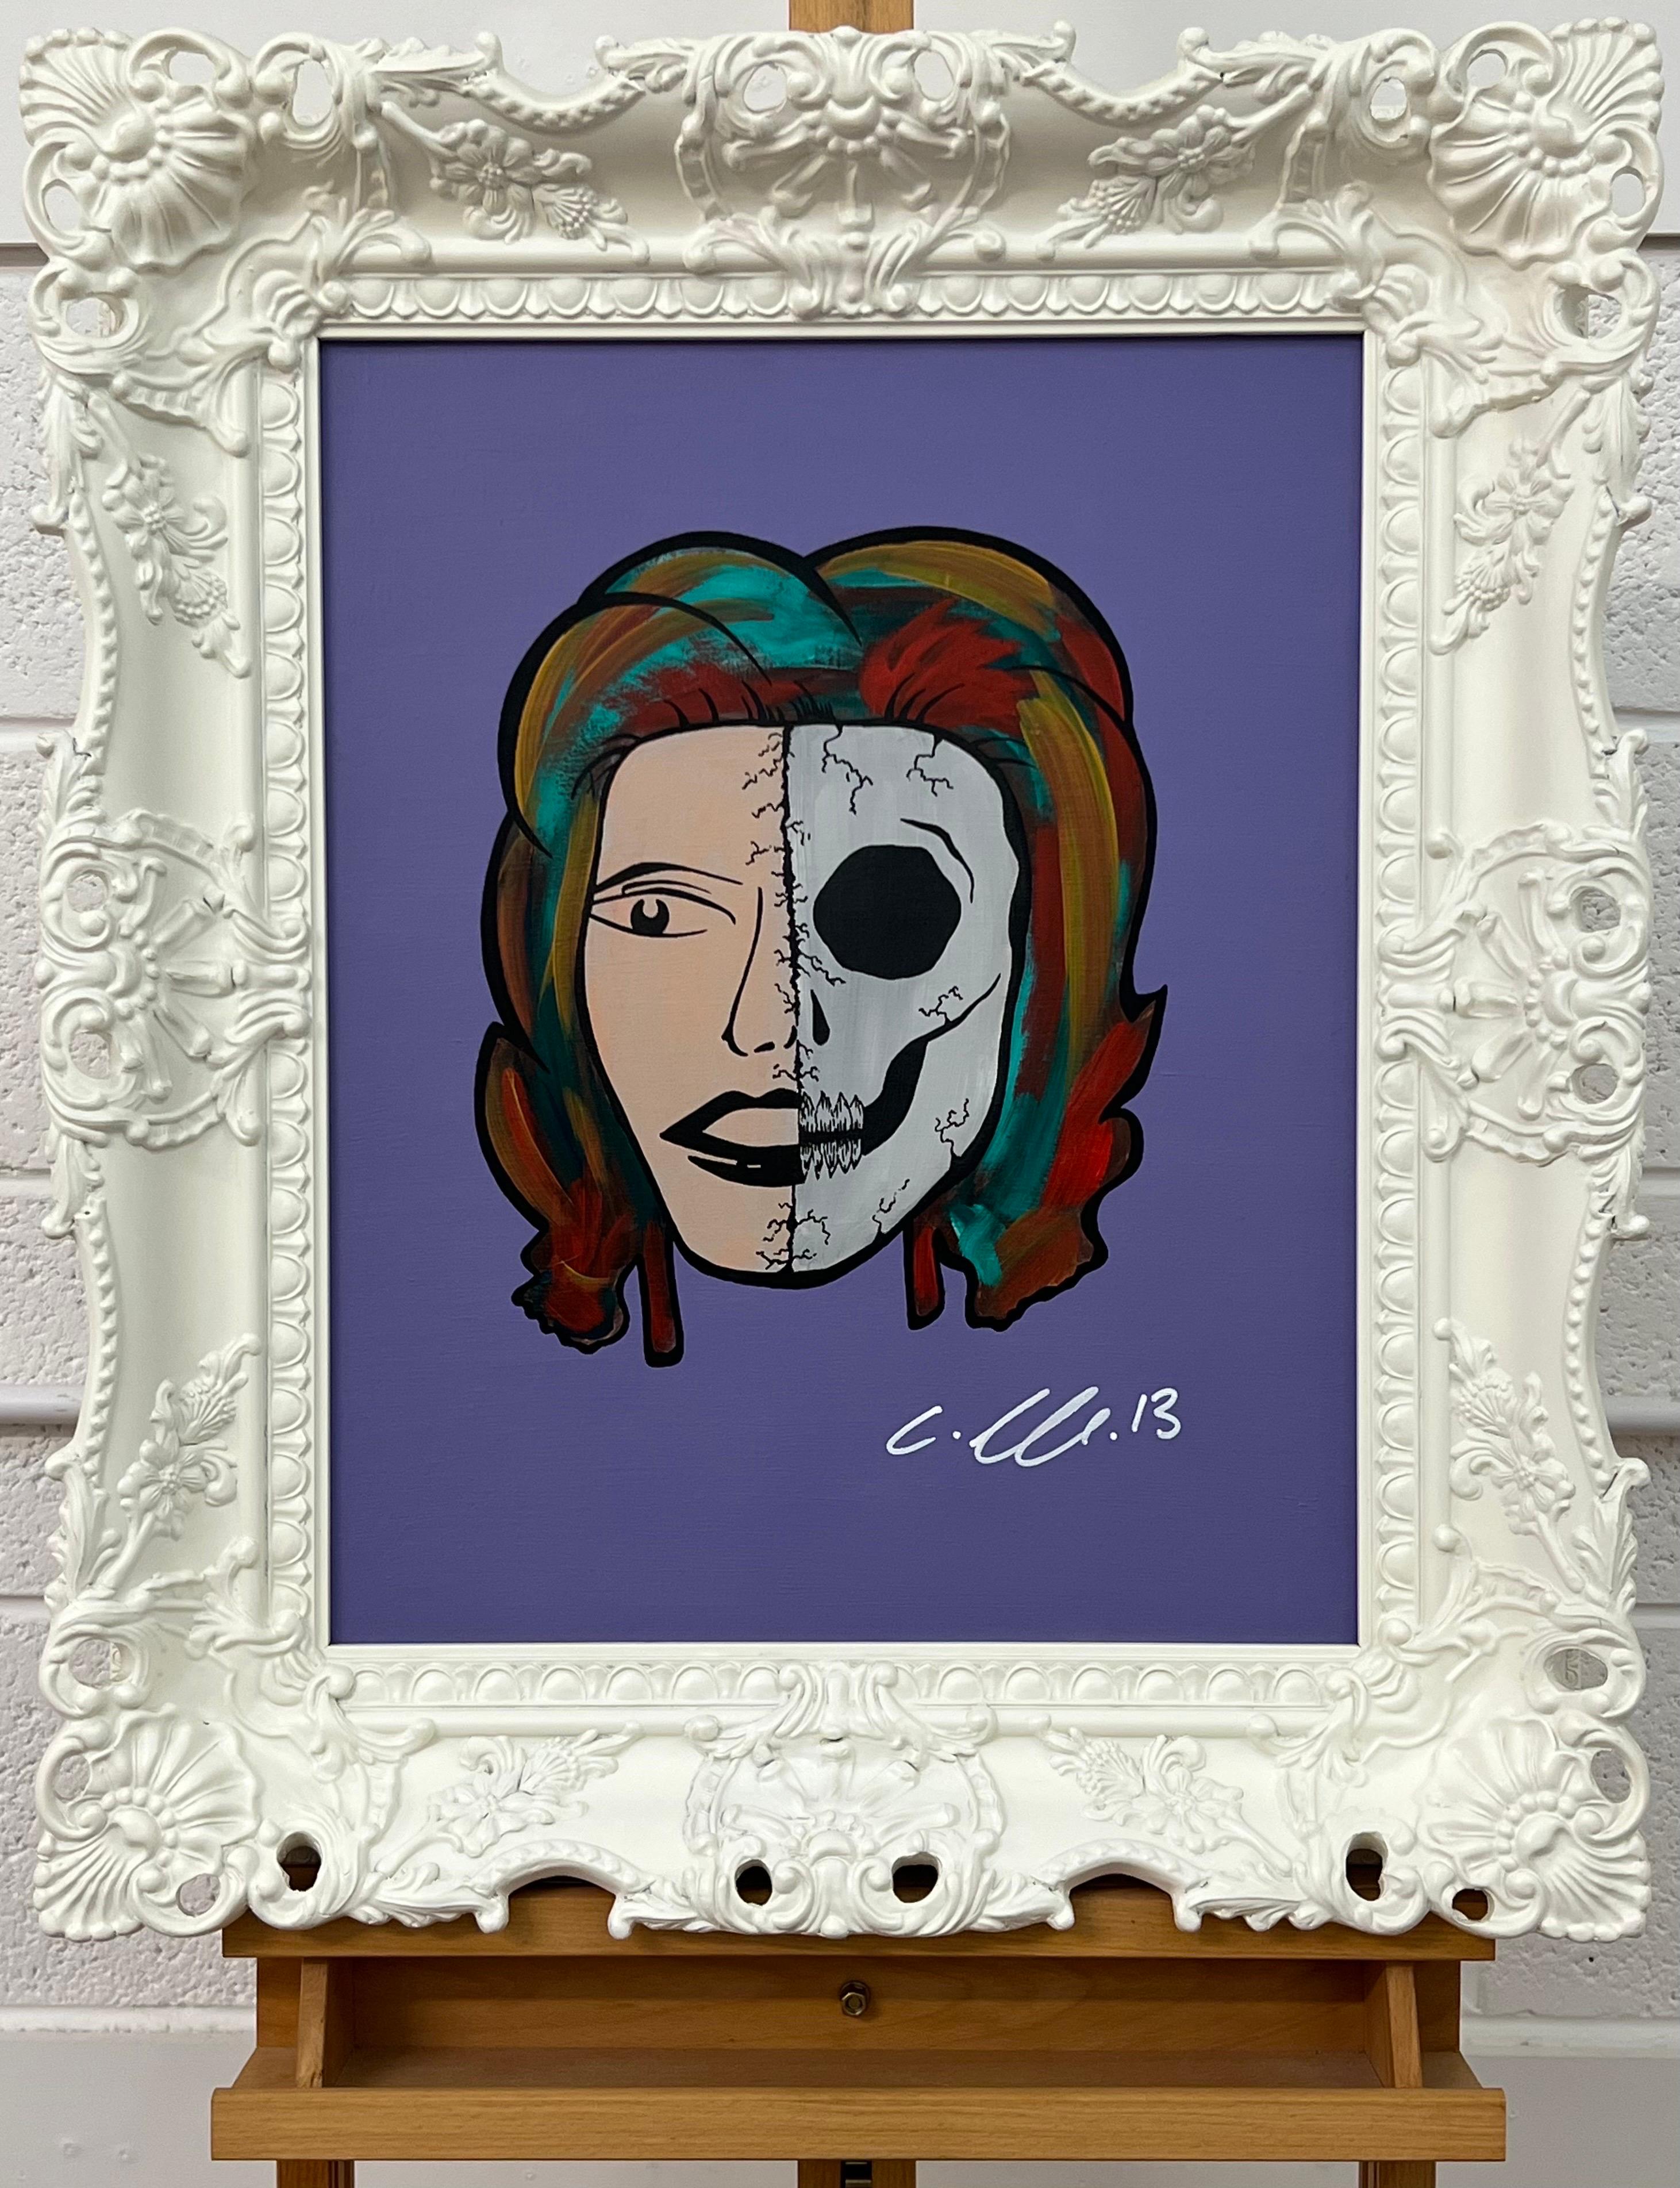 Half Skull & Female Face Portrait Pop Art von Chris Pegg, britischer Urban Graffiti Künstler. Fliederfarbener Hintergrund. Präsentiert in einem hochwertigen, verschnörkelten weißen Rahmen. 

Kunst misst 20 x 16 Zoll 
Rahmen misst 26 x 22 Zoll